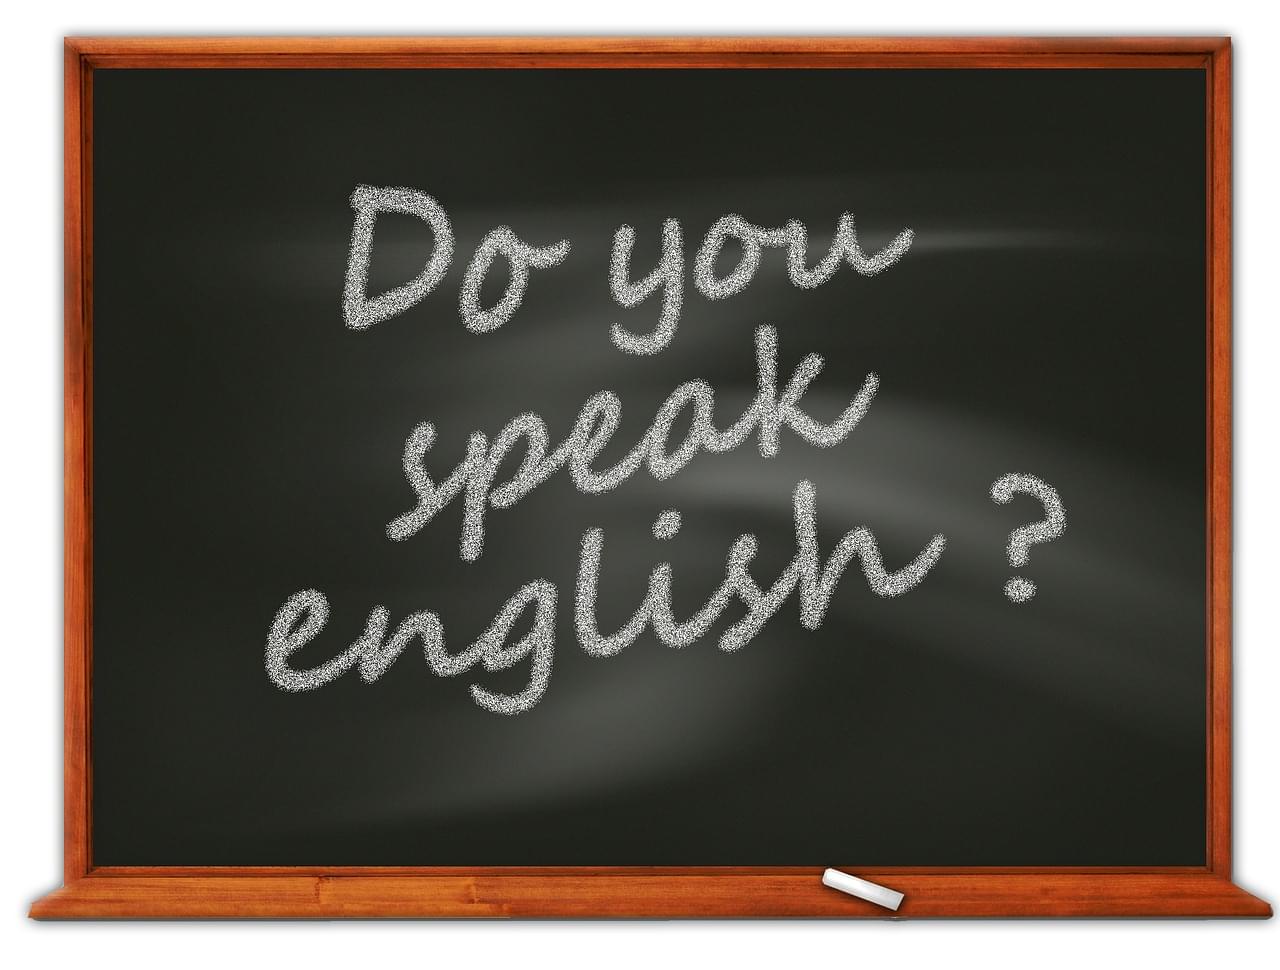 海外旅行先で英会話を楽しもう！英語を話せるようになるコツ、教えます！